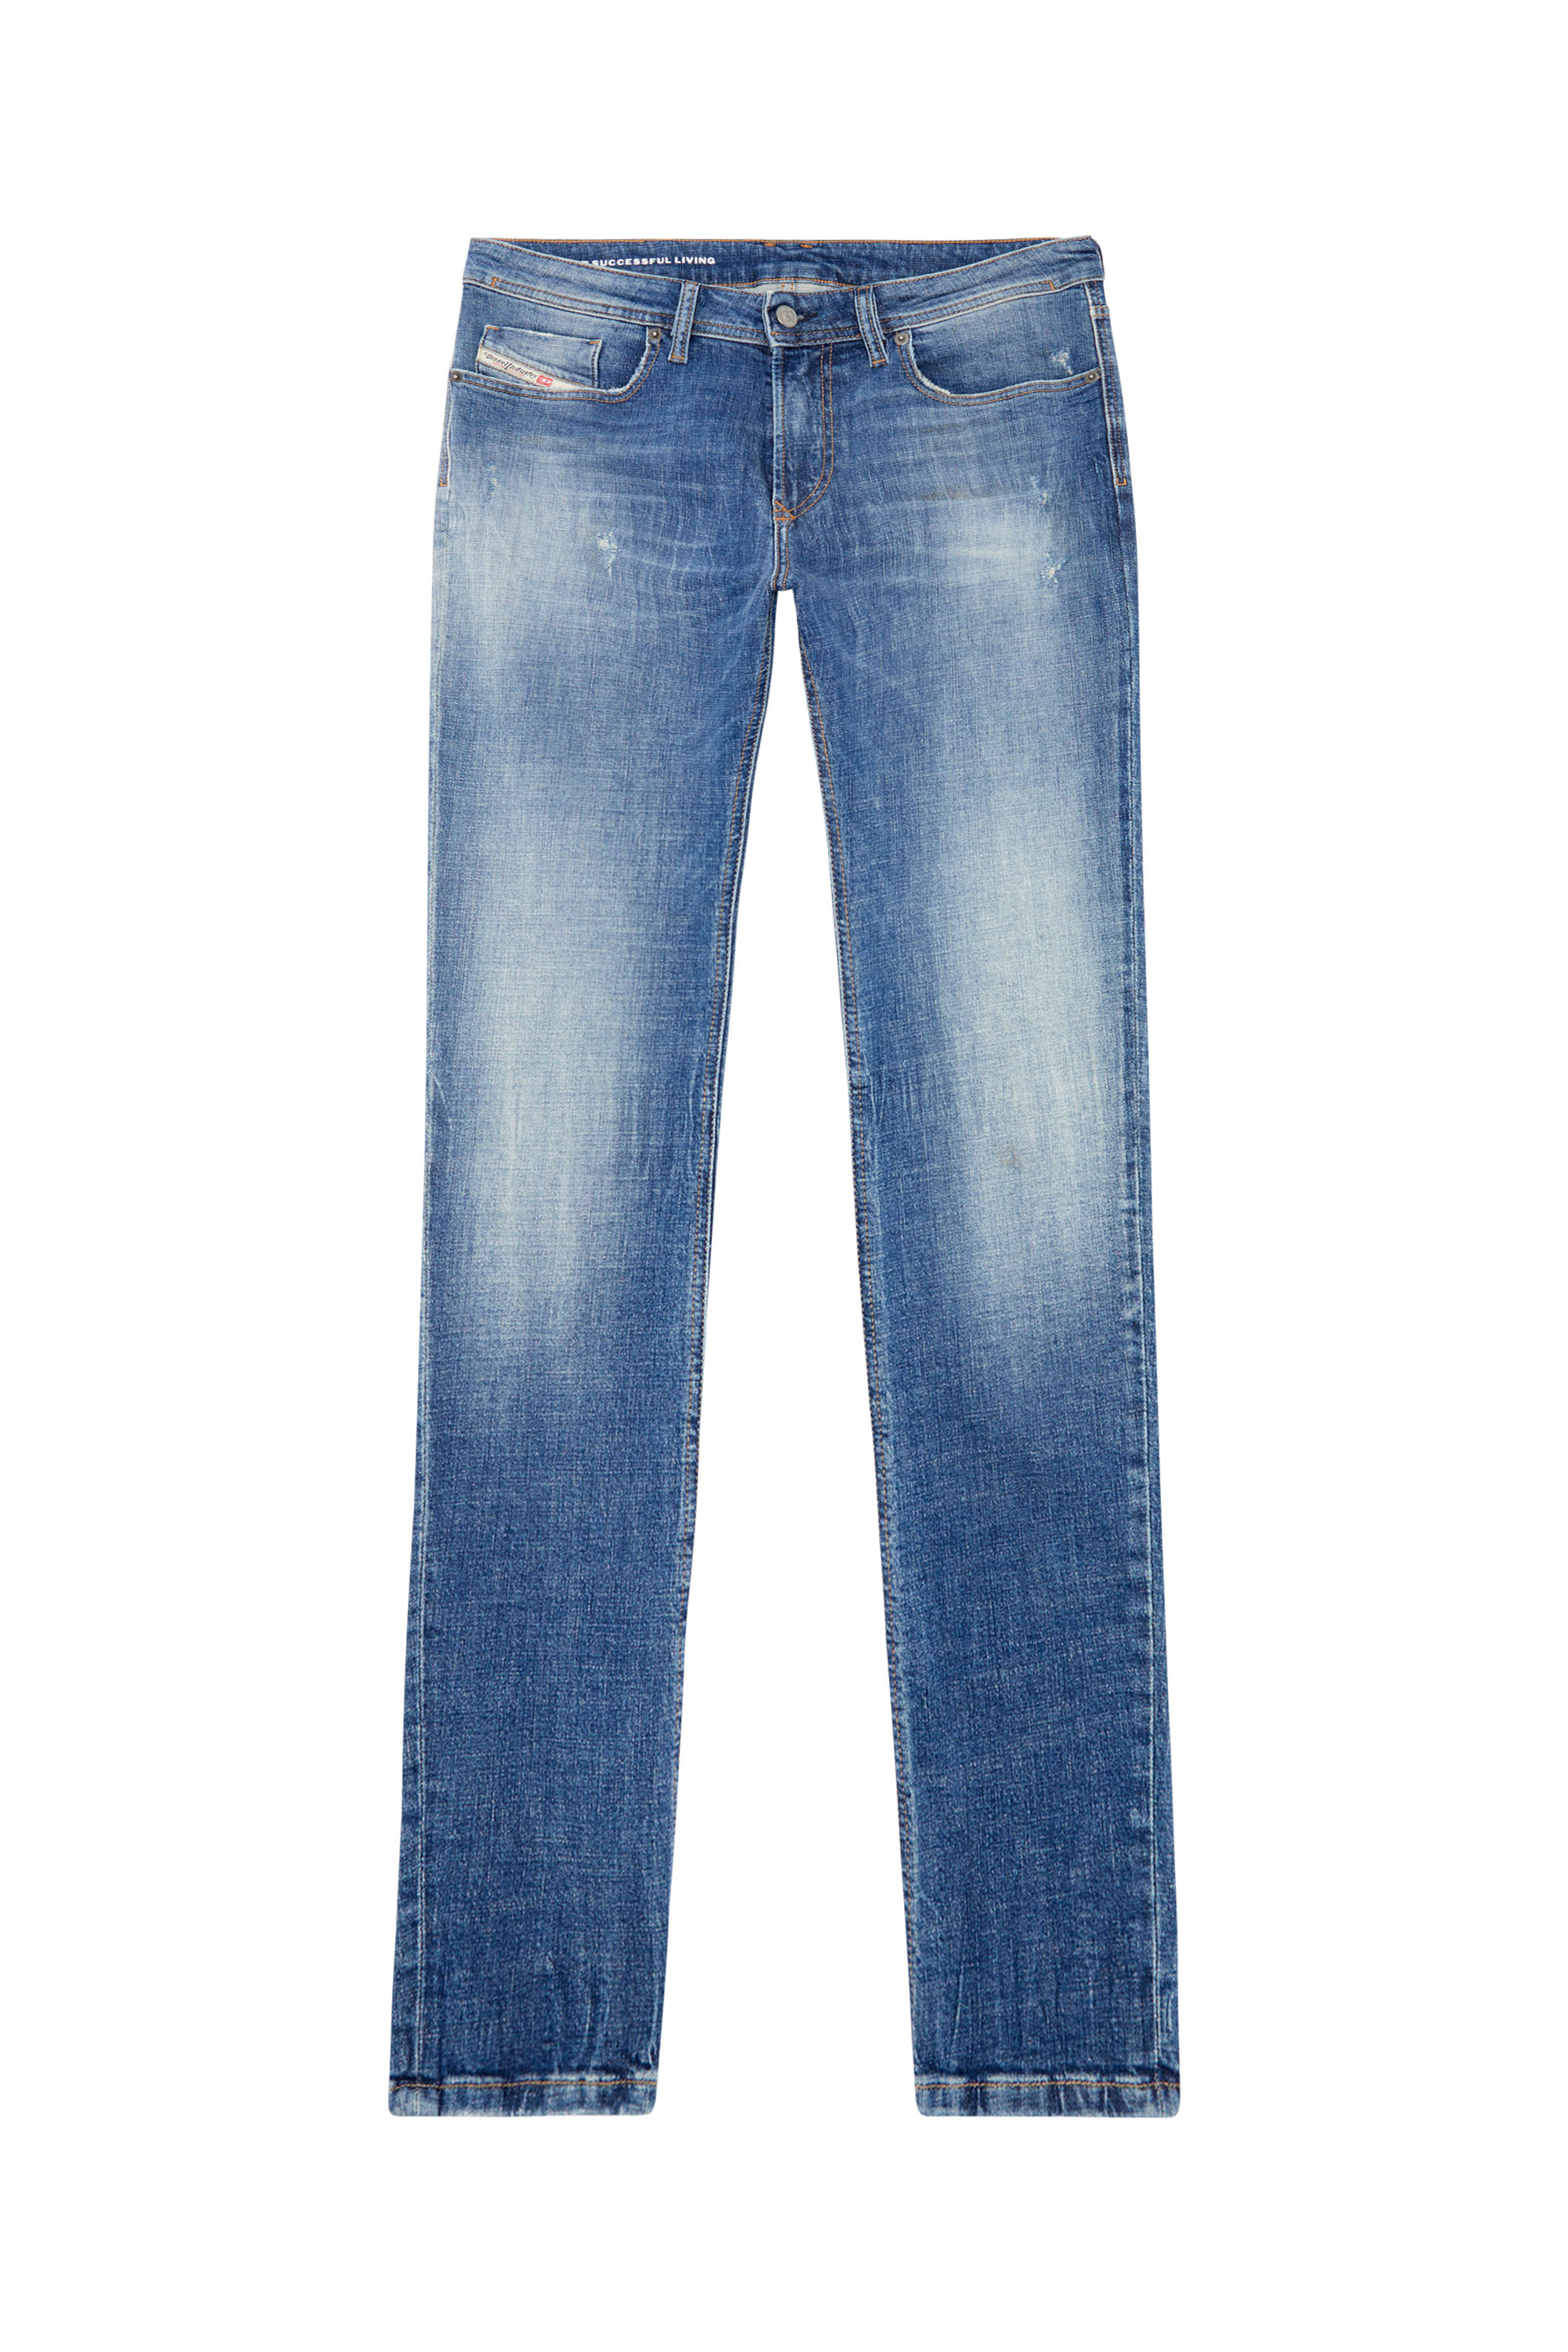 Diesel - Skinny Jeans 1979 Sleenker 0GRDF, Medium blue - Image 3